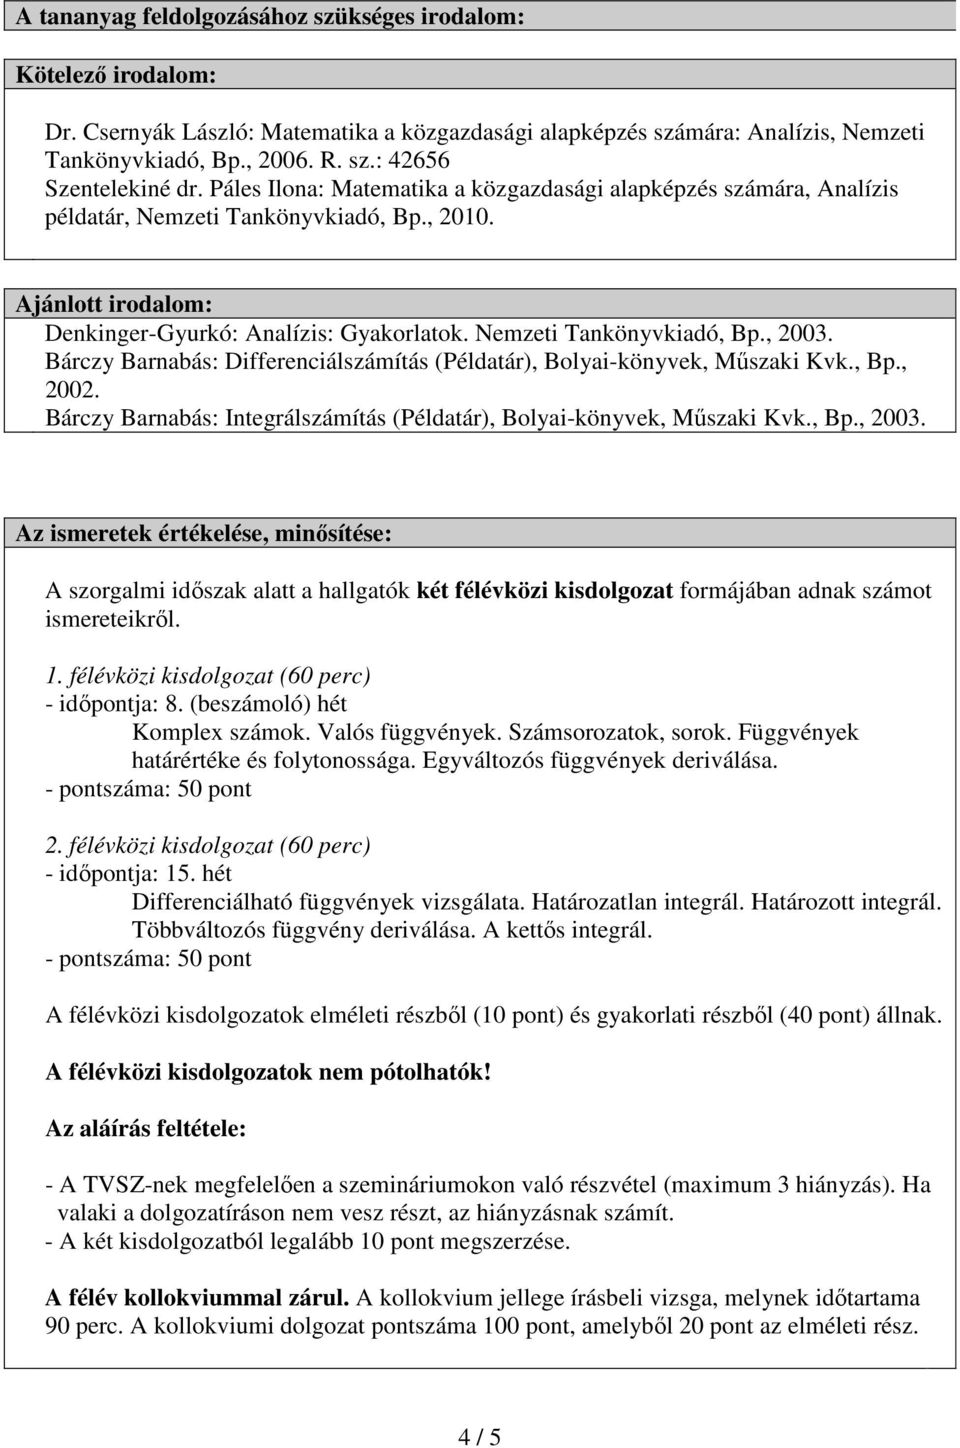 Bárczy Barnabás: Differenciálszámítás (Példatár), Bolyai-könyvek, Műszaki Kvk., Bp., 2002. Bárczy Barnabás: Integrálszámítás (Példatár), Bolyai-könyvek, Műszaki Kvk., Bp., 2003.